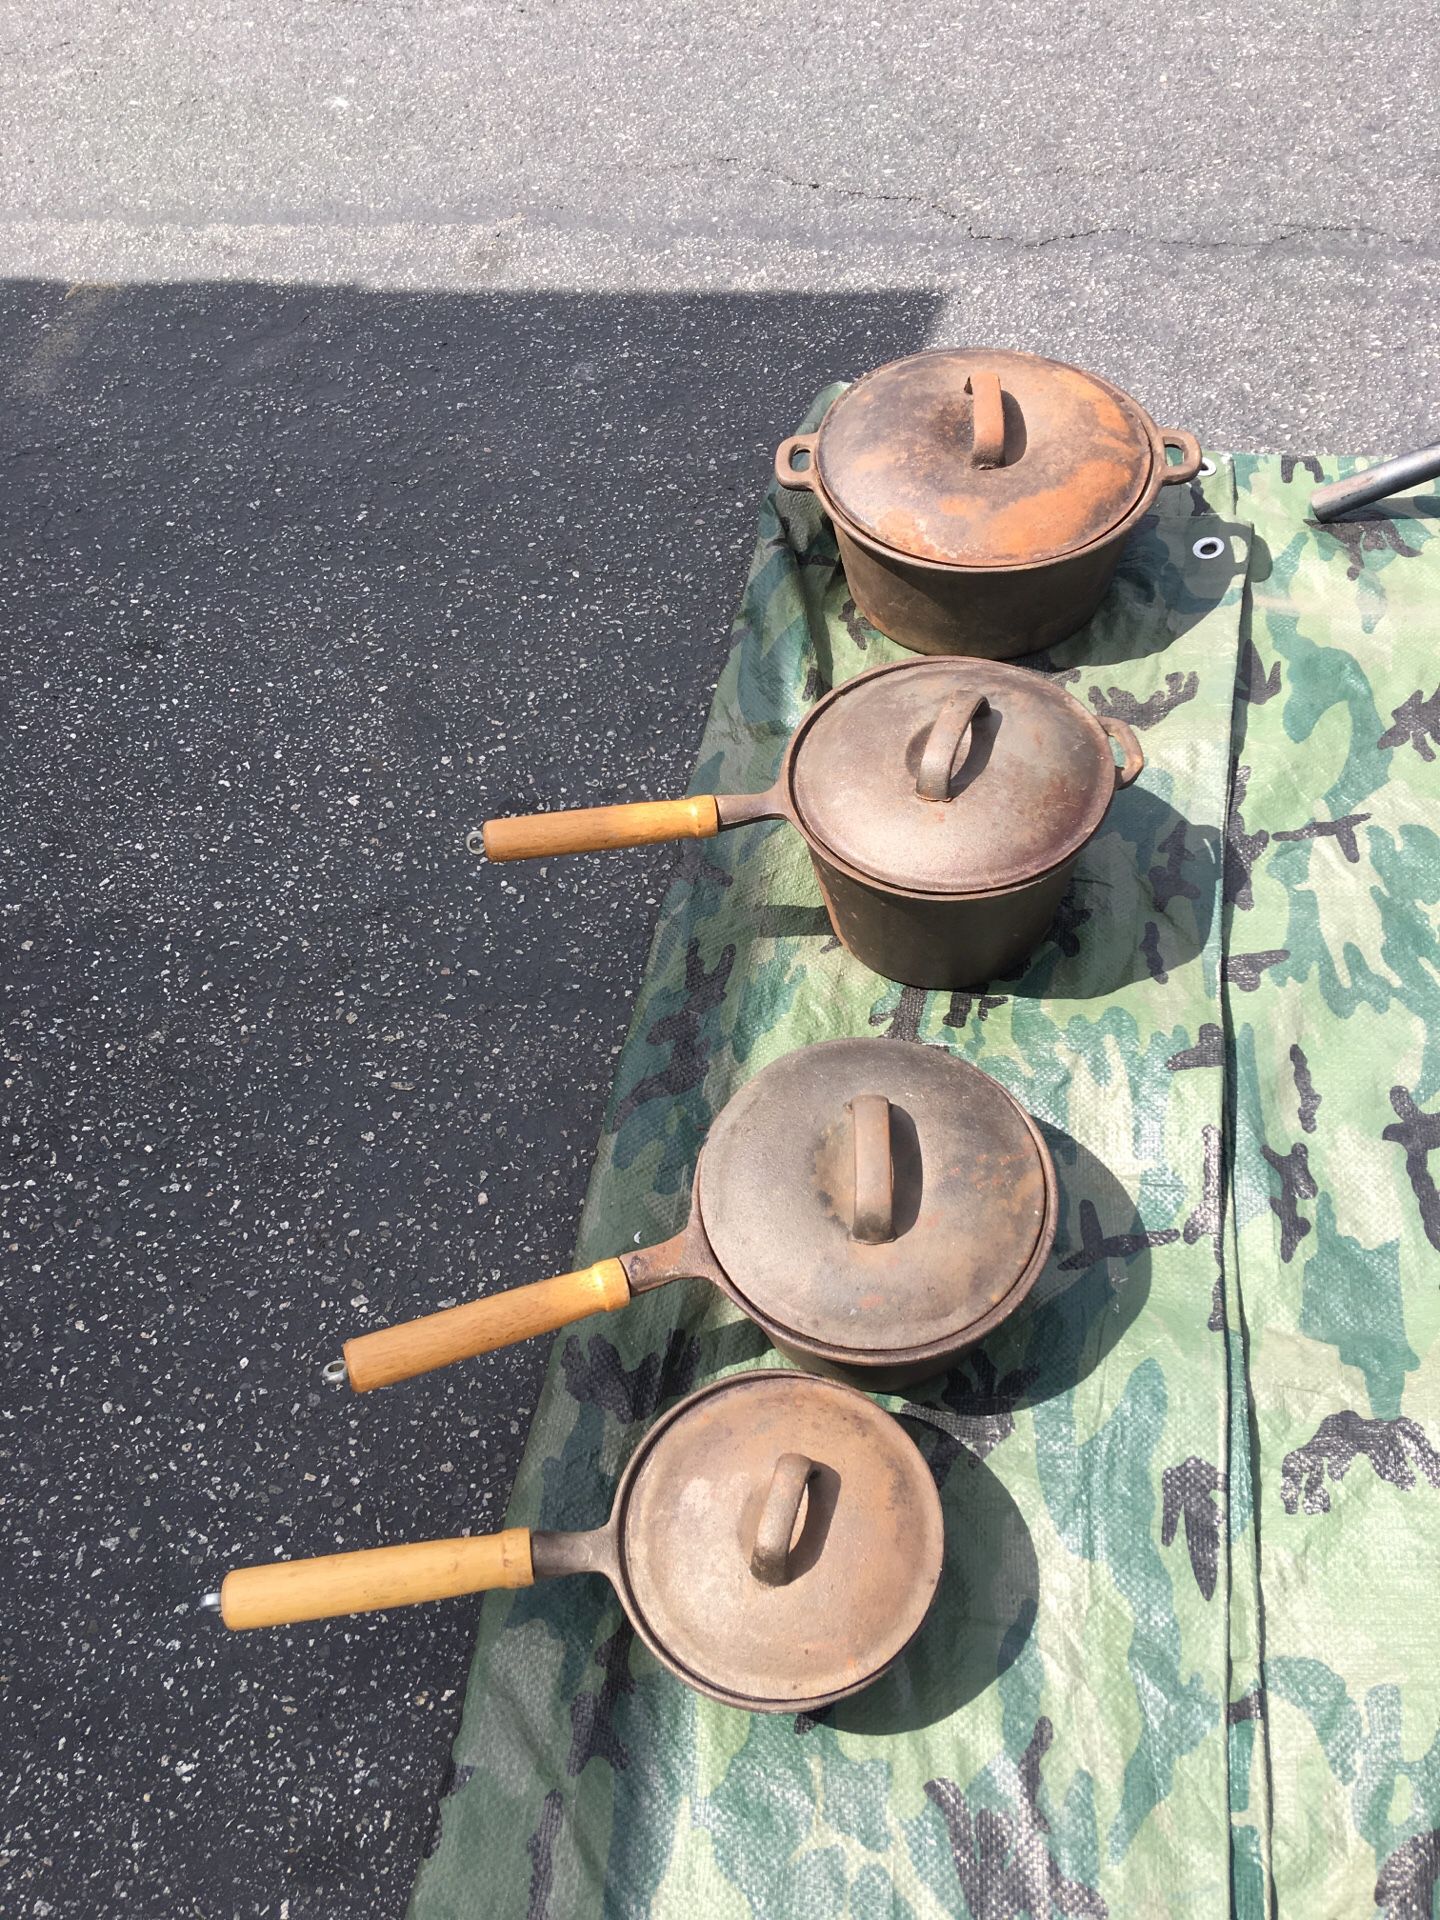 Cast iron pans pots with lids